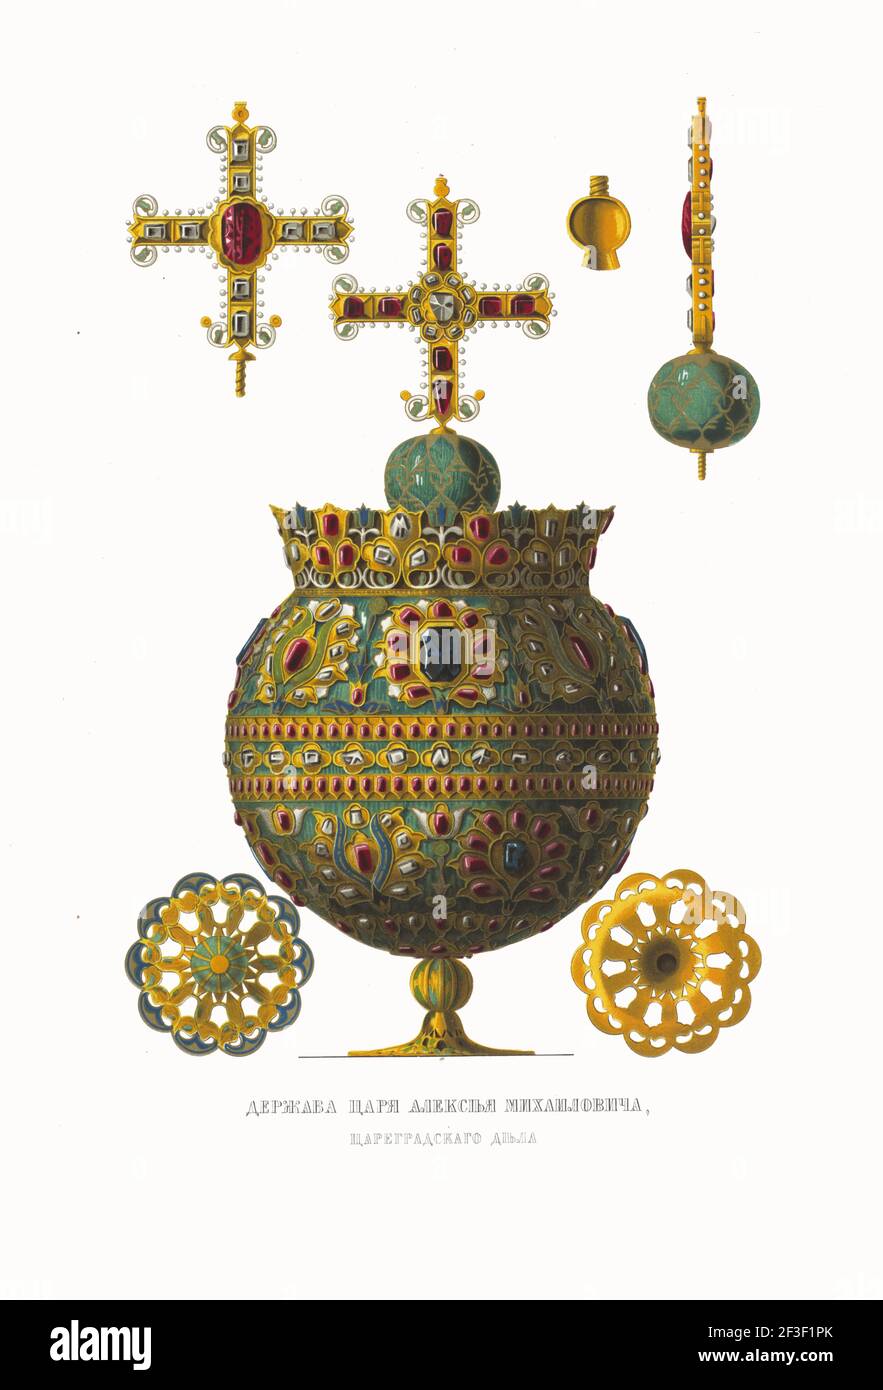 Grobus cruciger di Tsar Alexei Mikhailovich. Dalle Antichità dello Stato Russo, 1849-1853. Collezione privata. Foto Stock